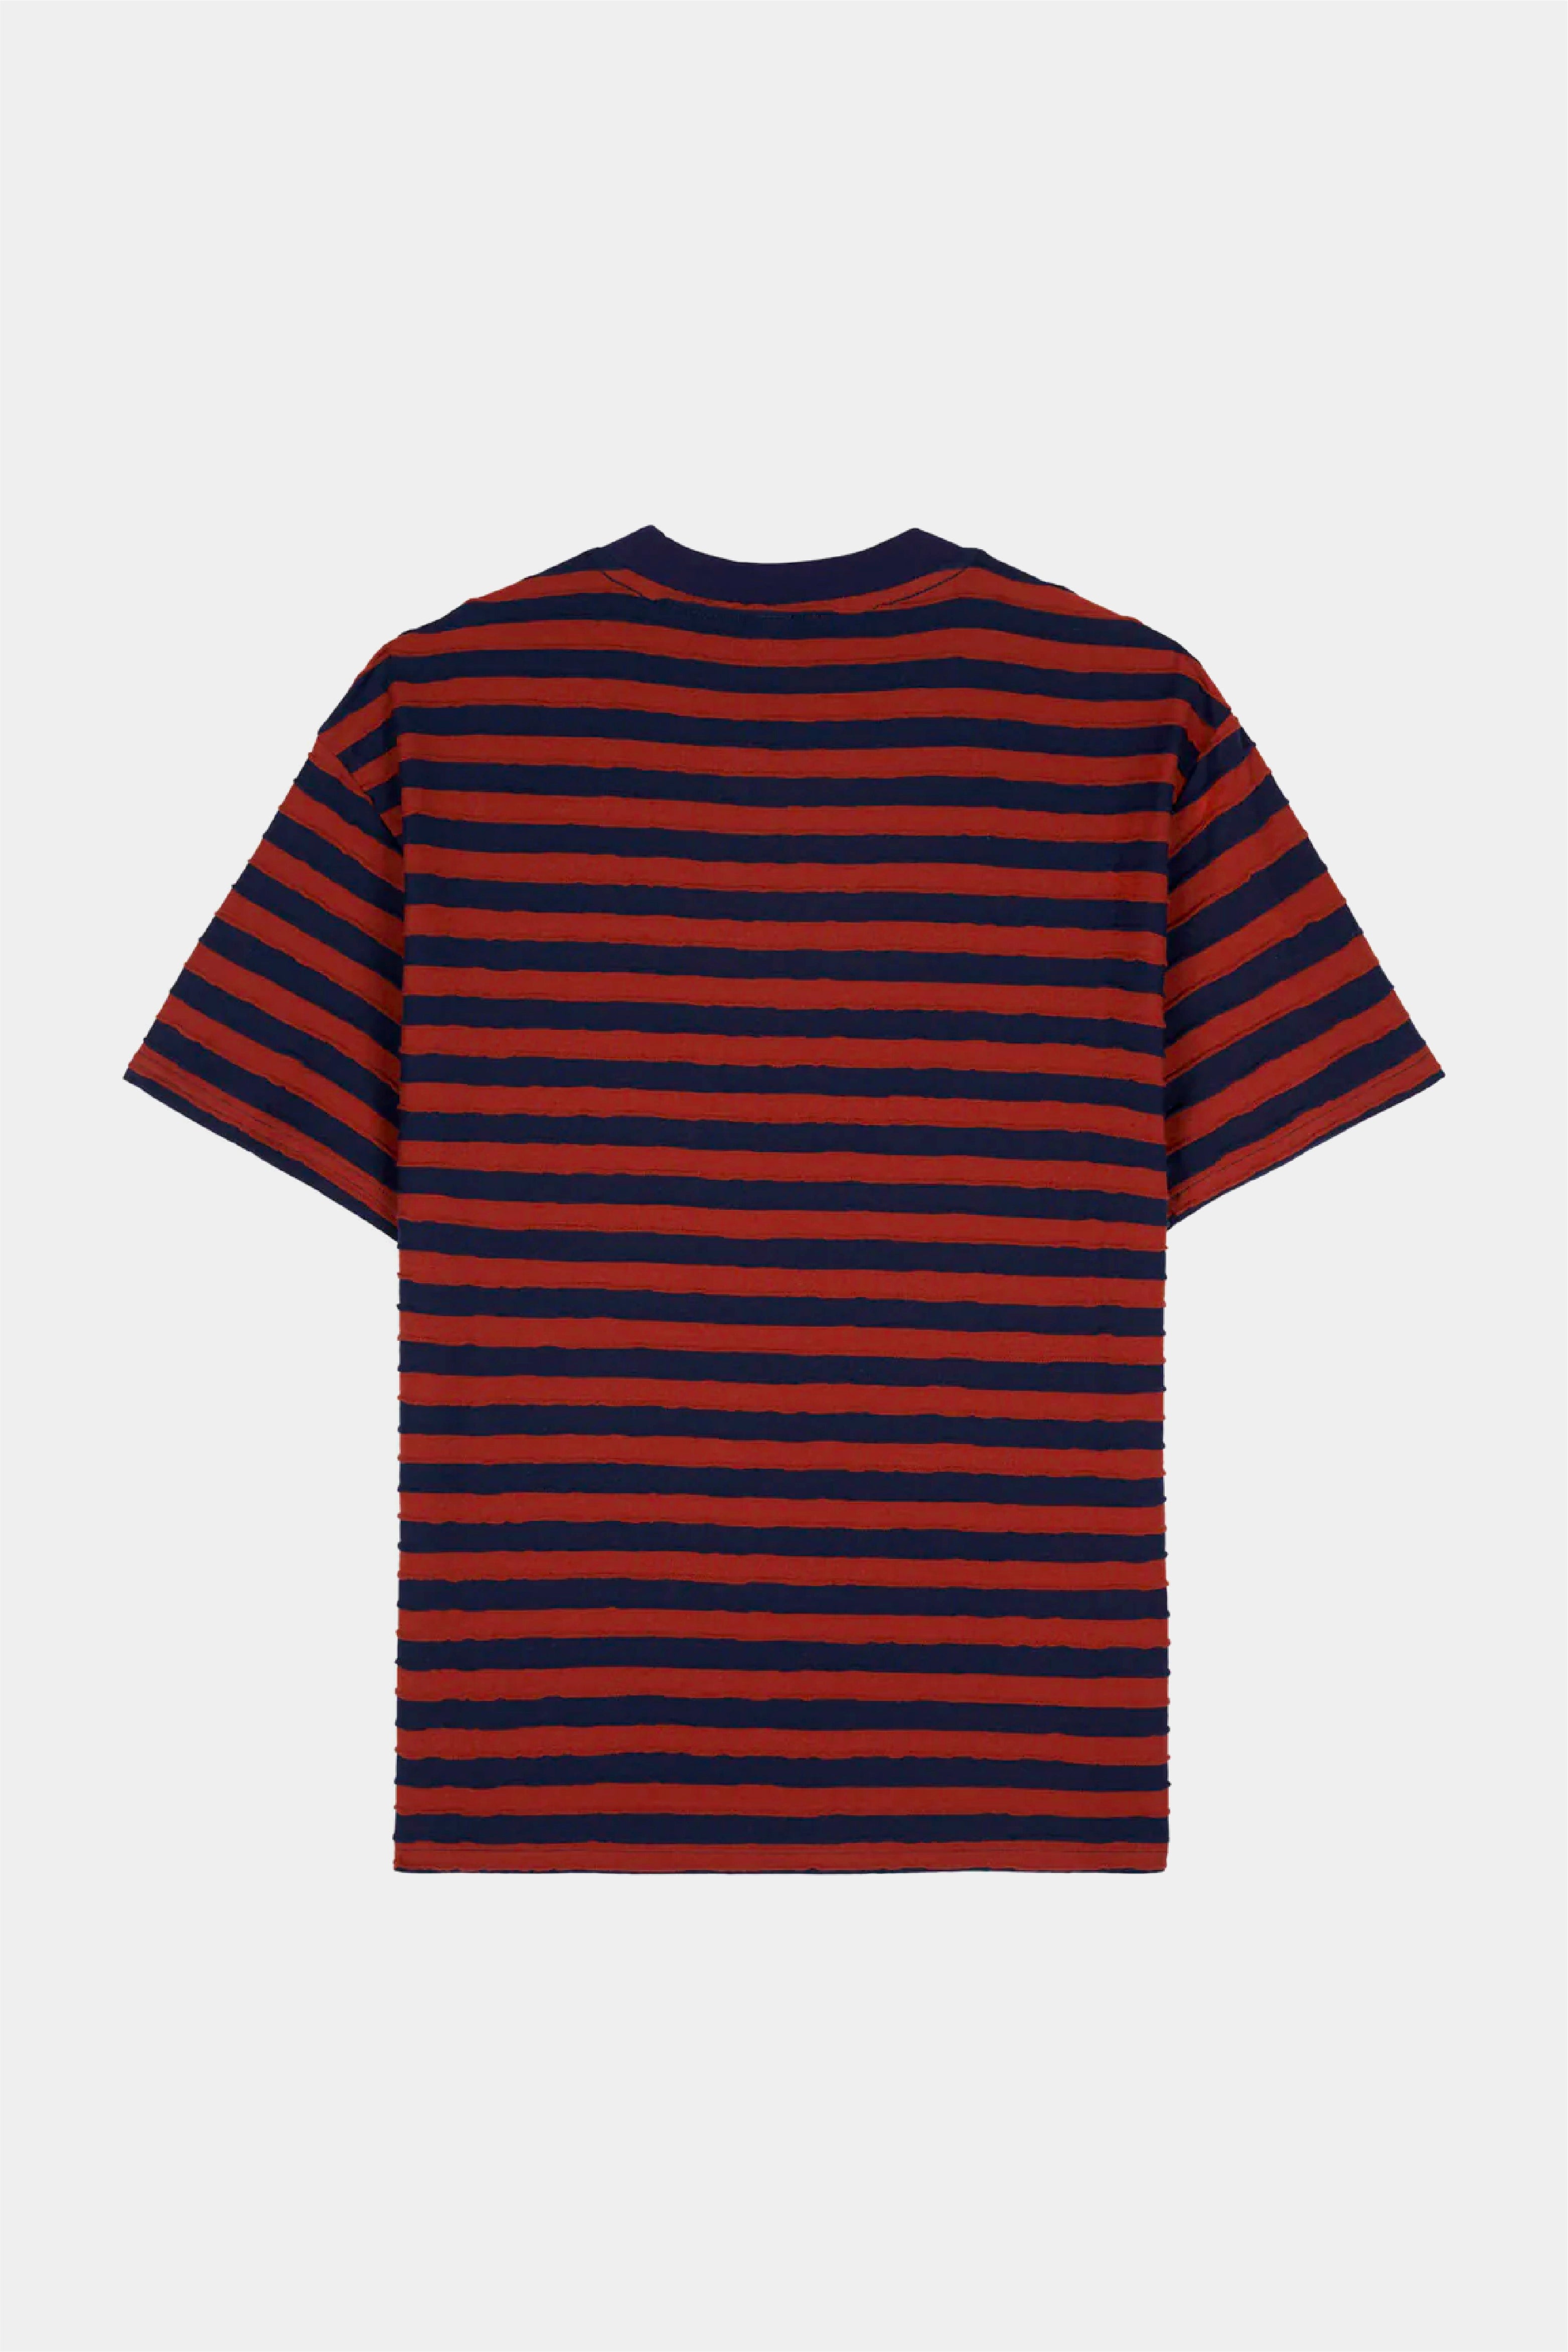 Selectshop FRAME - BRAIN DEAD Denny Blaine Striped T-Shirt T-Shirts Concept Store Dubai